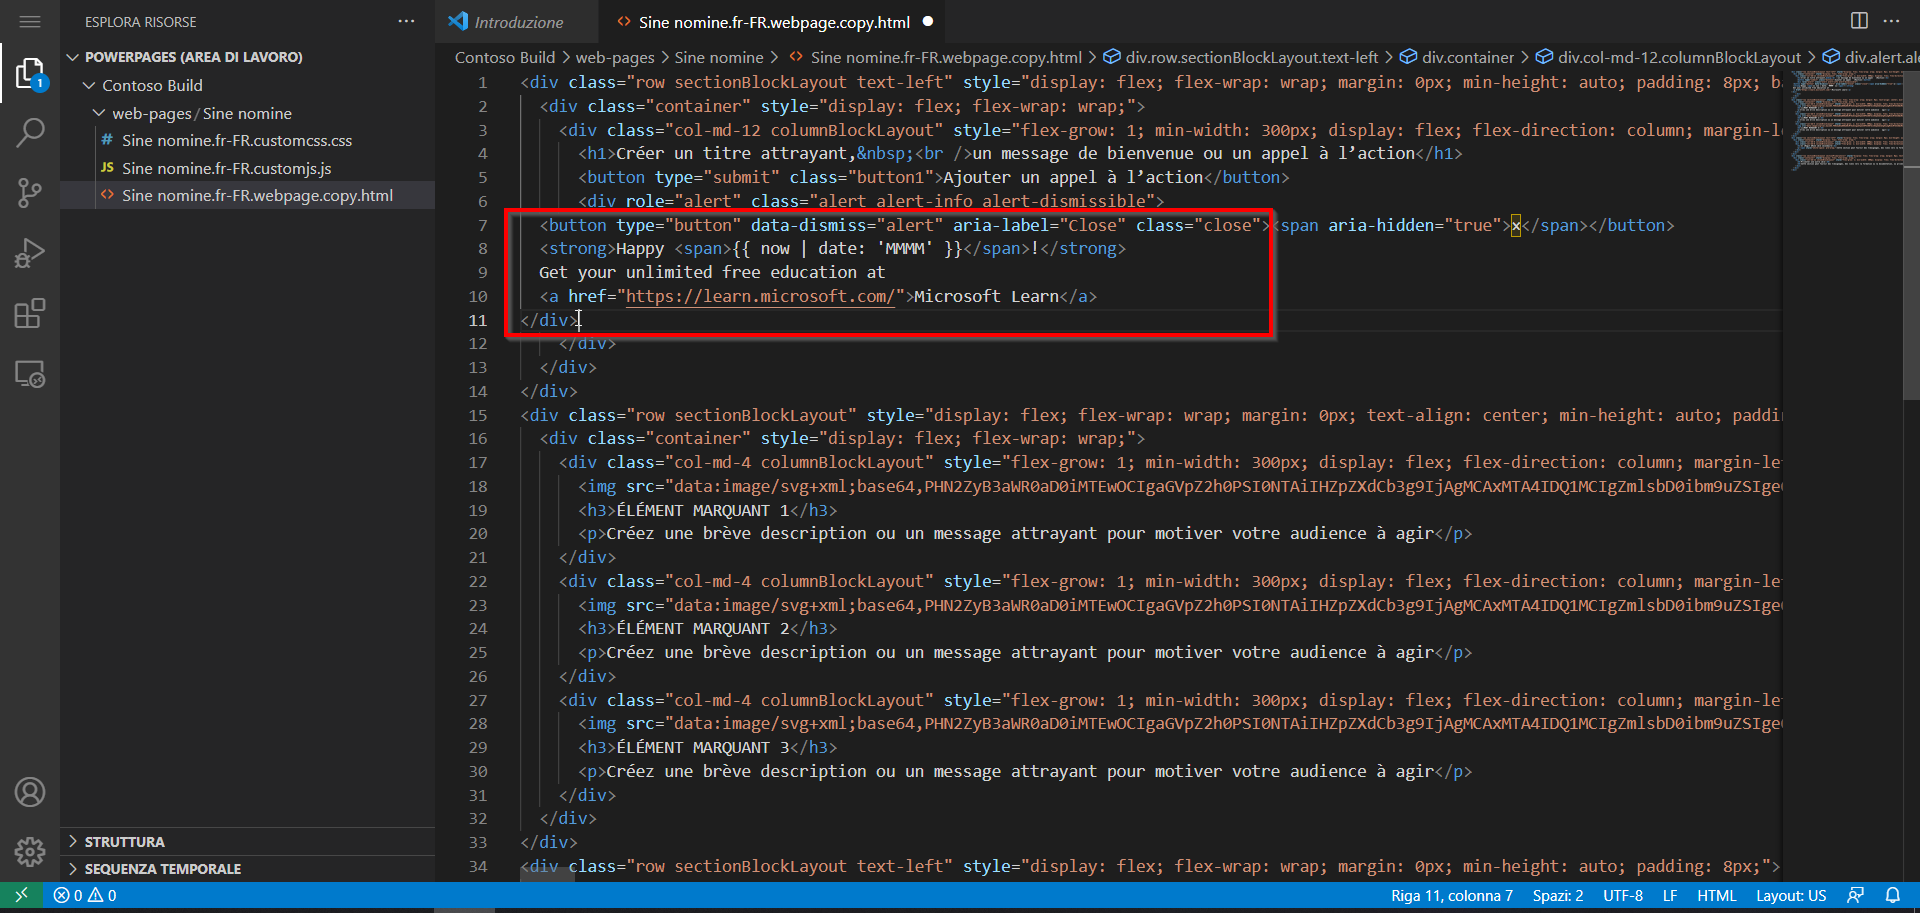 Capture d’écran du contenu de la page ouverte dans l’éditeur Visual Studio Code pour le Web avec le nouveau contenu en surbrillance.